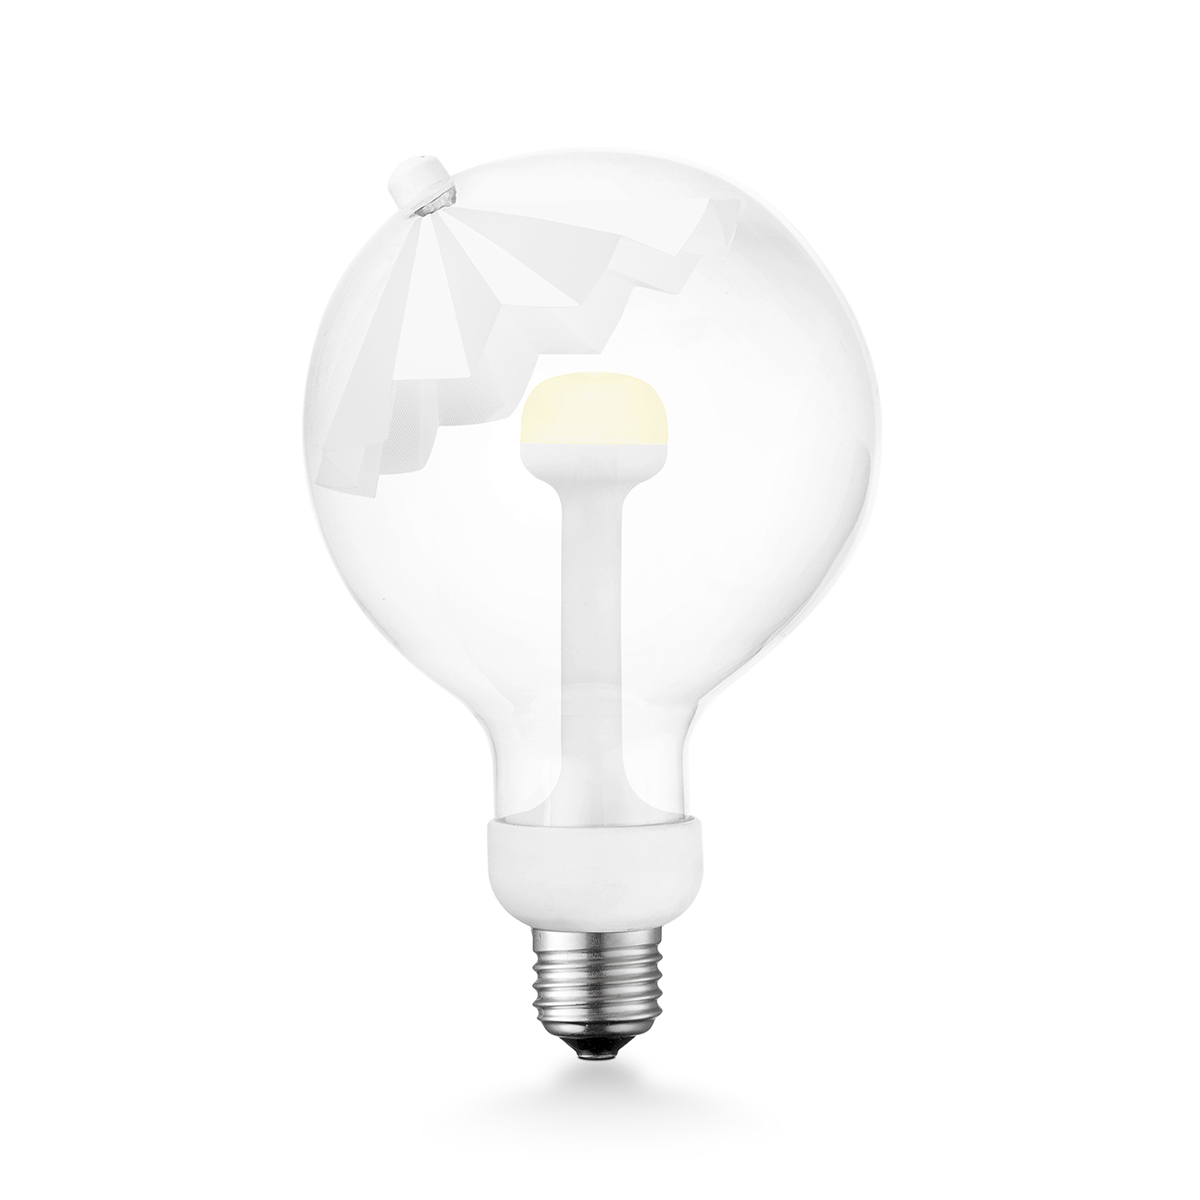 Tangla lighting - 0670-06-D - LED Light Bulb Move me - G120 5.5W Umbrella white - dimmable - E27 / E26